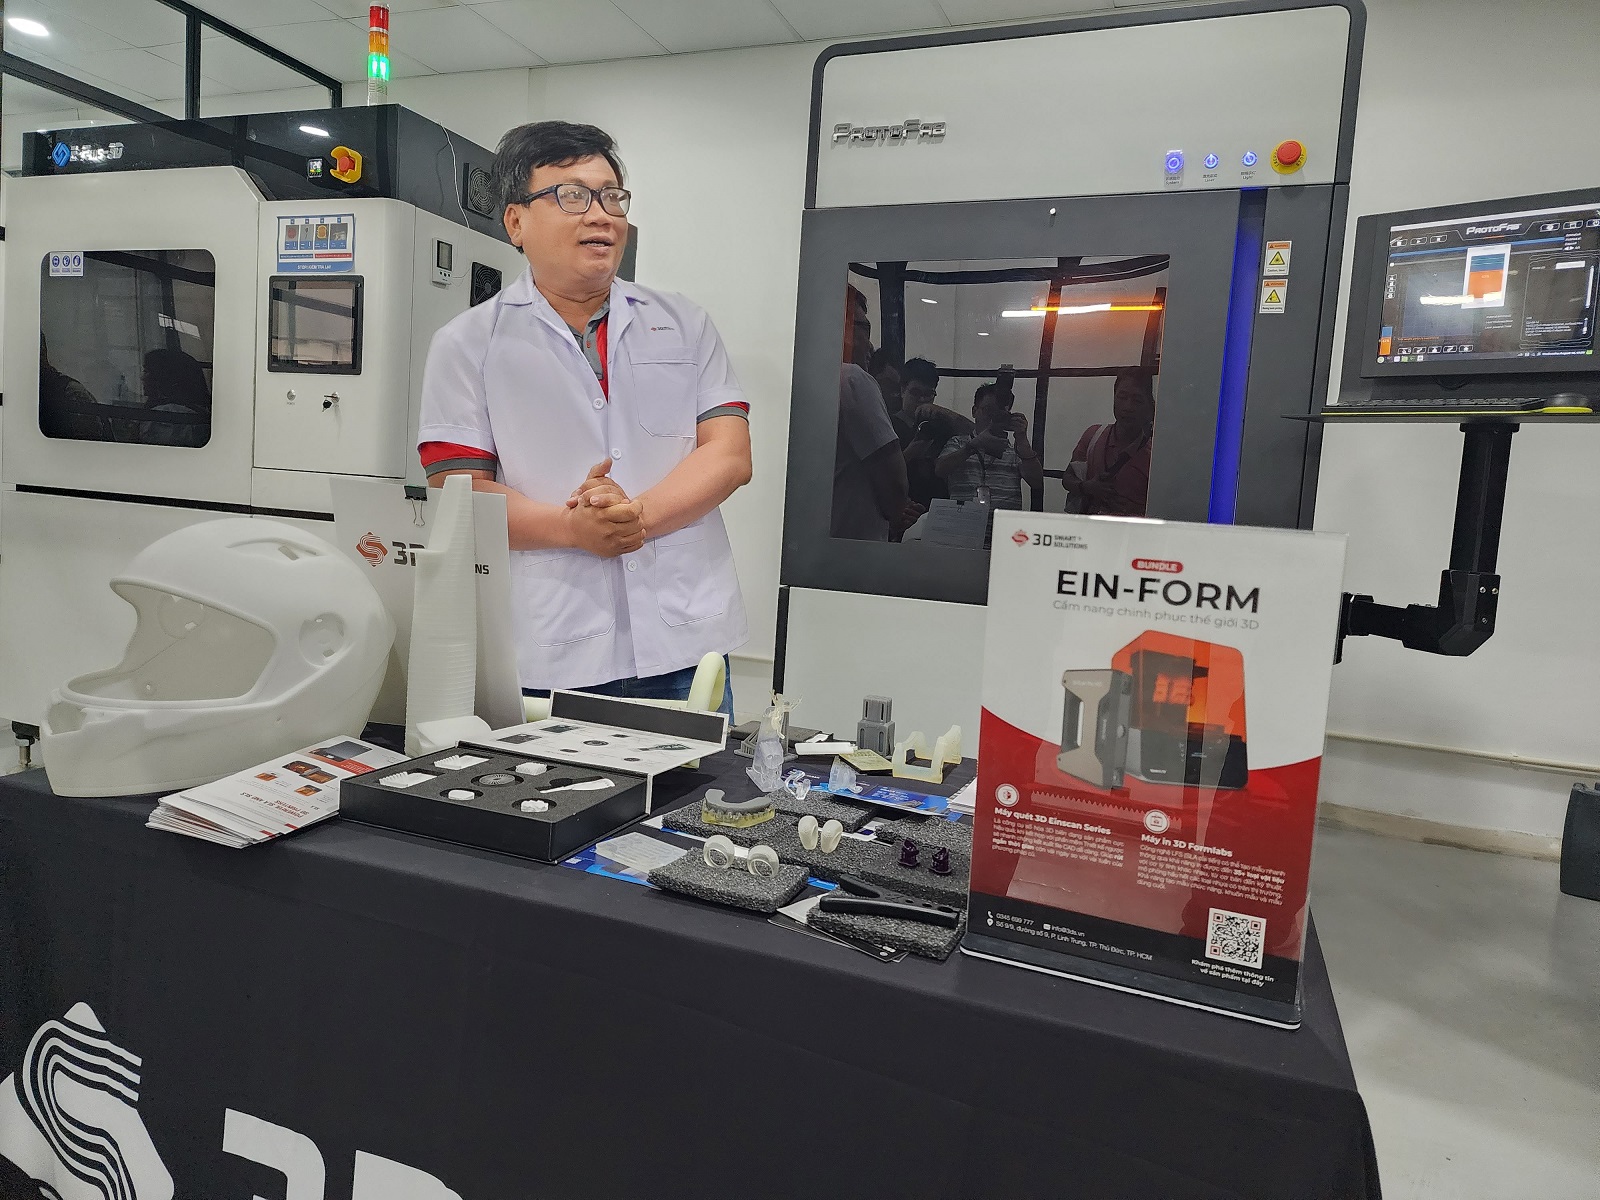 3D Smart Solutions xưởng in 3D lớn nhất Việt Nam và giấc mơ in 3D đi vào đời sống - 20230816 103249